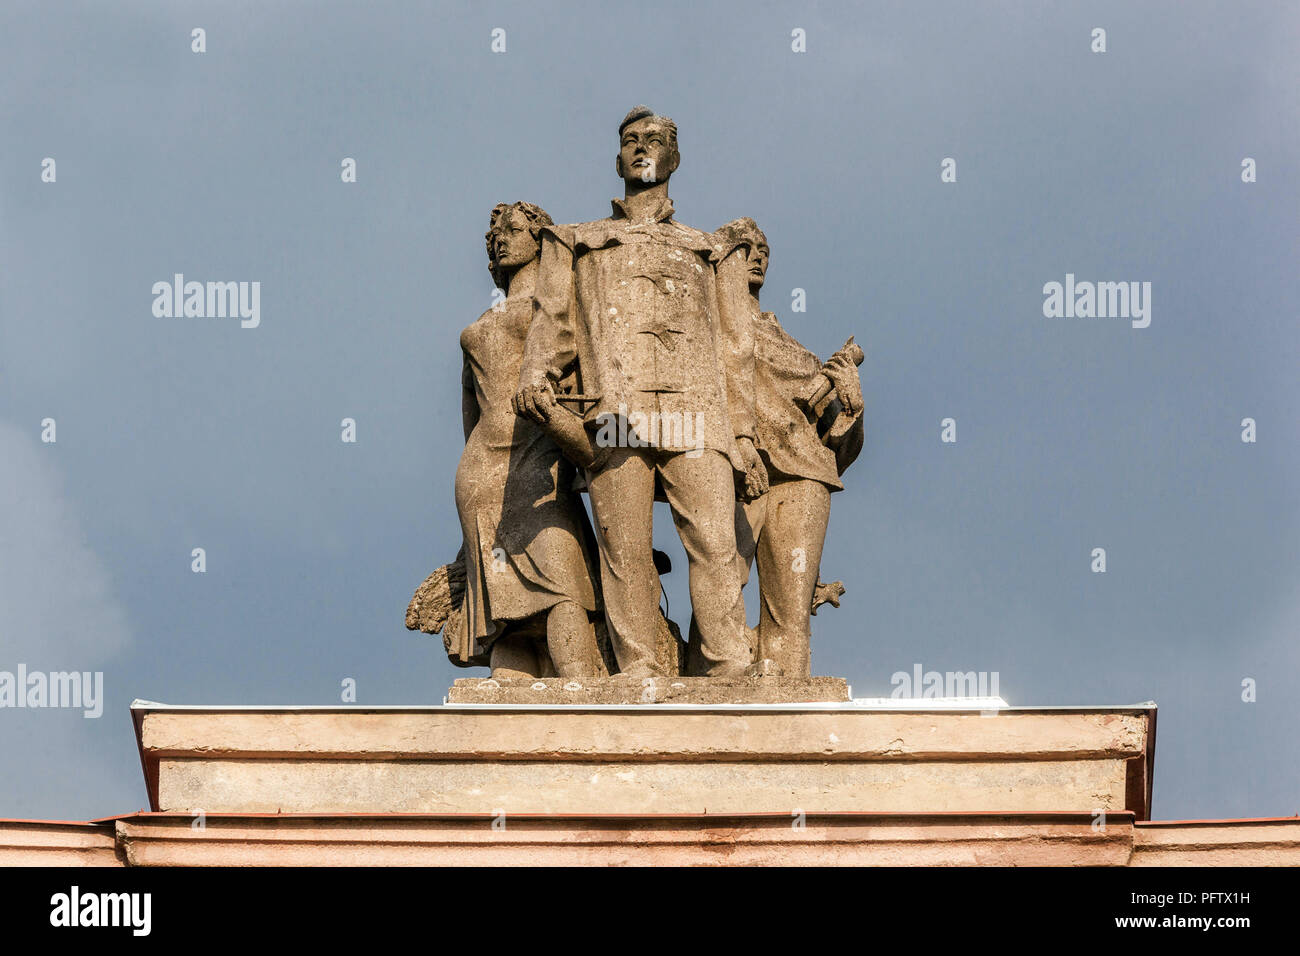 L'oeuvre du sculpteur Jaroslav Slezinger, qui sont morts dans un camp de travail communiste, 1950, Maison de la Culture, Ostrov nad Ohri, République Tchèque Banque D'Images